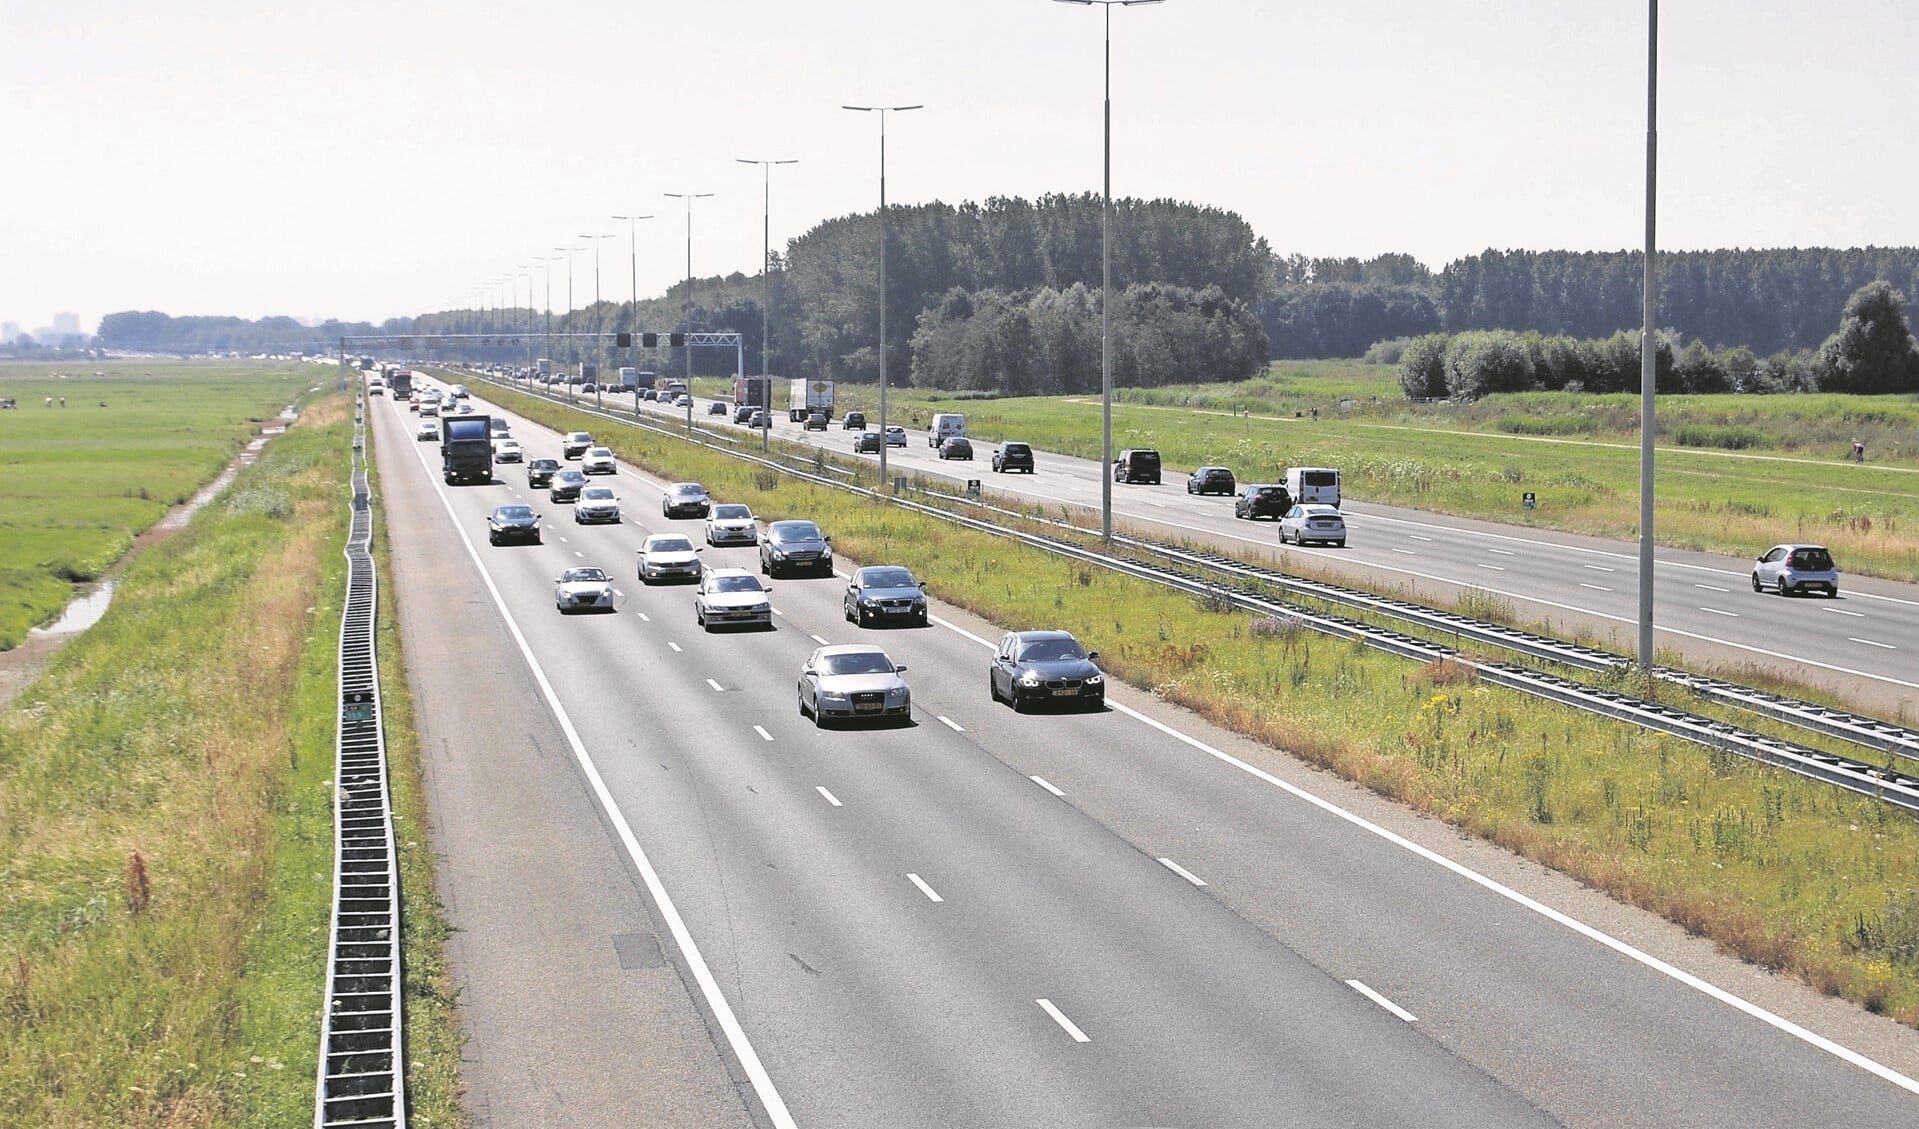 Het Haagse college van B&w meent dat voor de komende jaren al voldoende maatregelen gepland staan om de doorstroming van het verkeer op de A4 te waarborgen (archieffoto DJ).